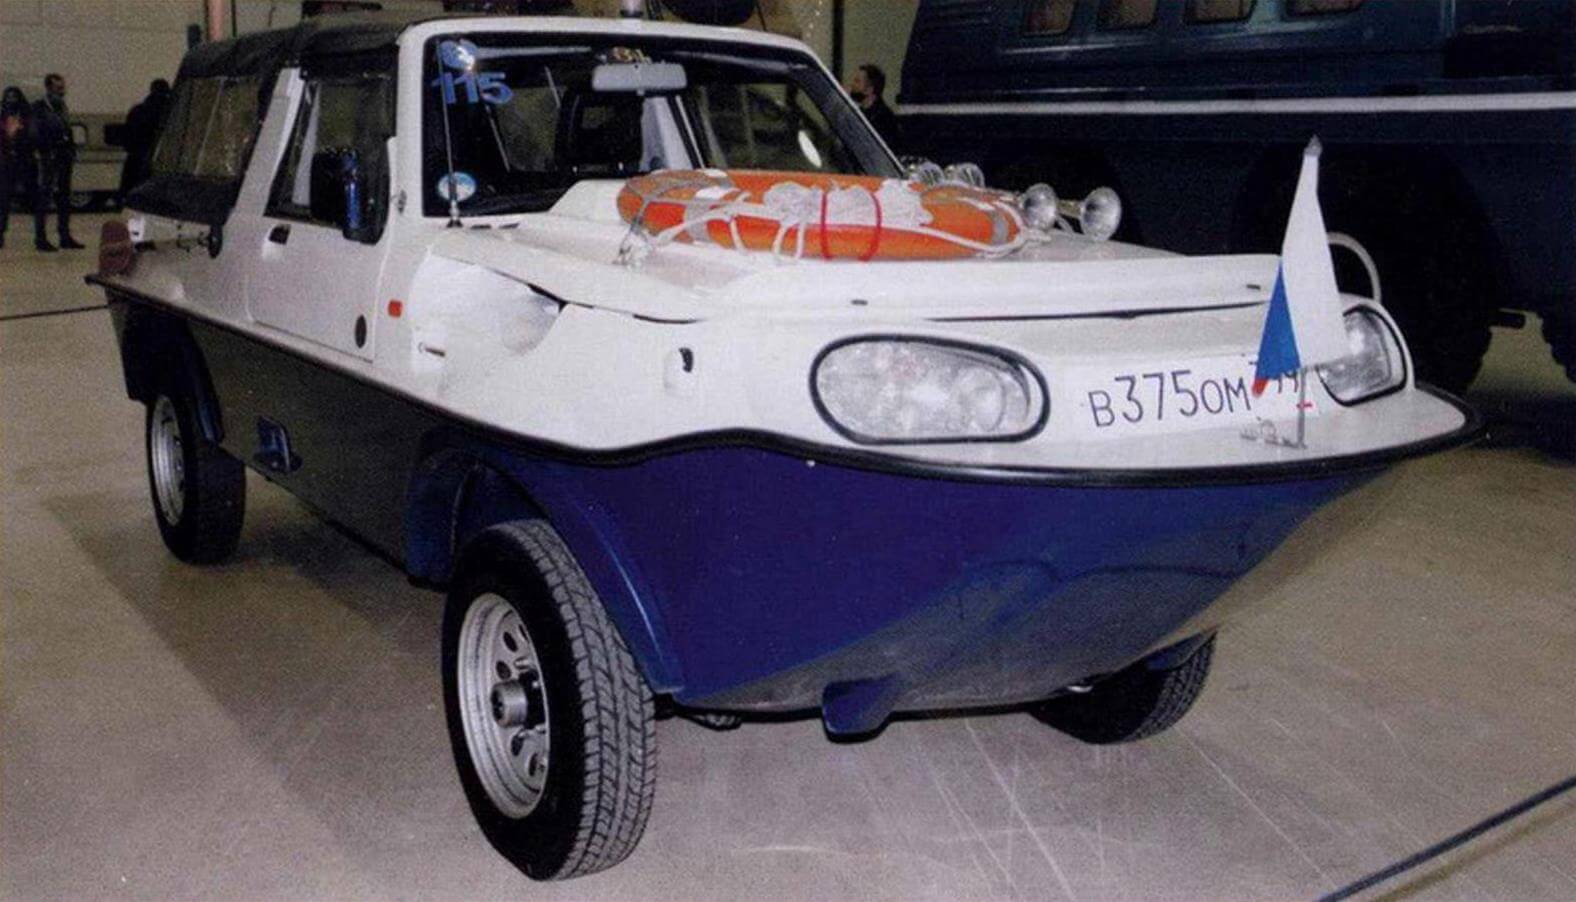 Редкий гость в наших краях - плавающий автомобиль Dutton Surf, построенный на агрегатах Suzuki Jimny